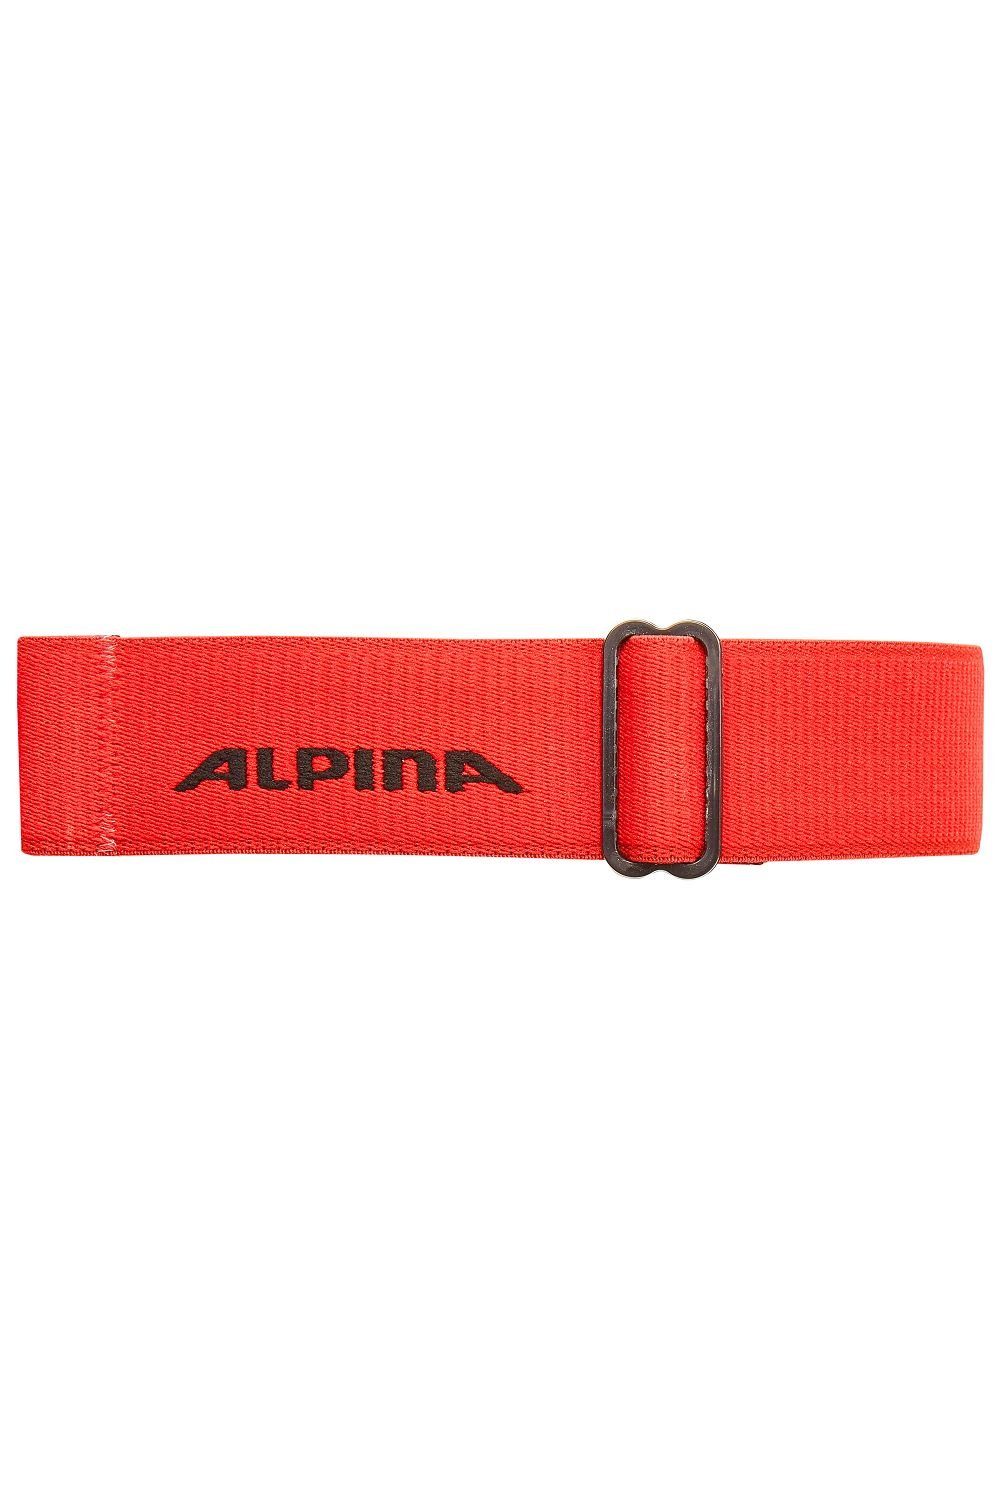 Alpina Skibrille Sports onesize FREESPIRIT schwarz/rot Skibrille DH Alpina